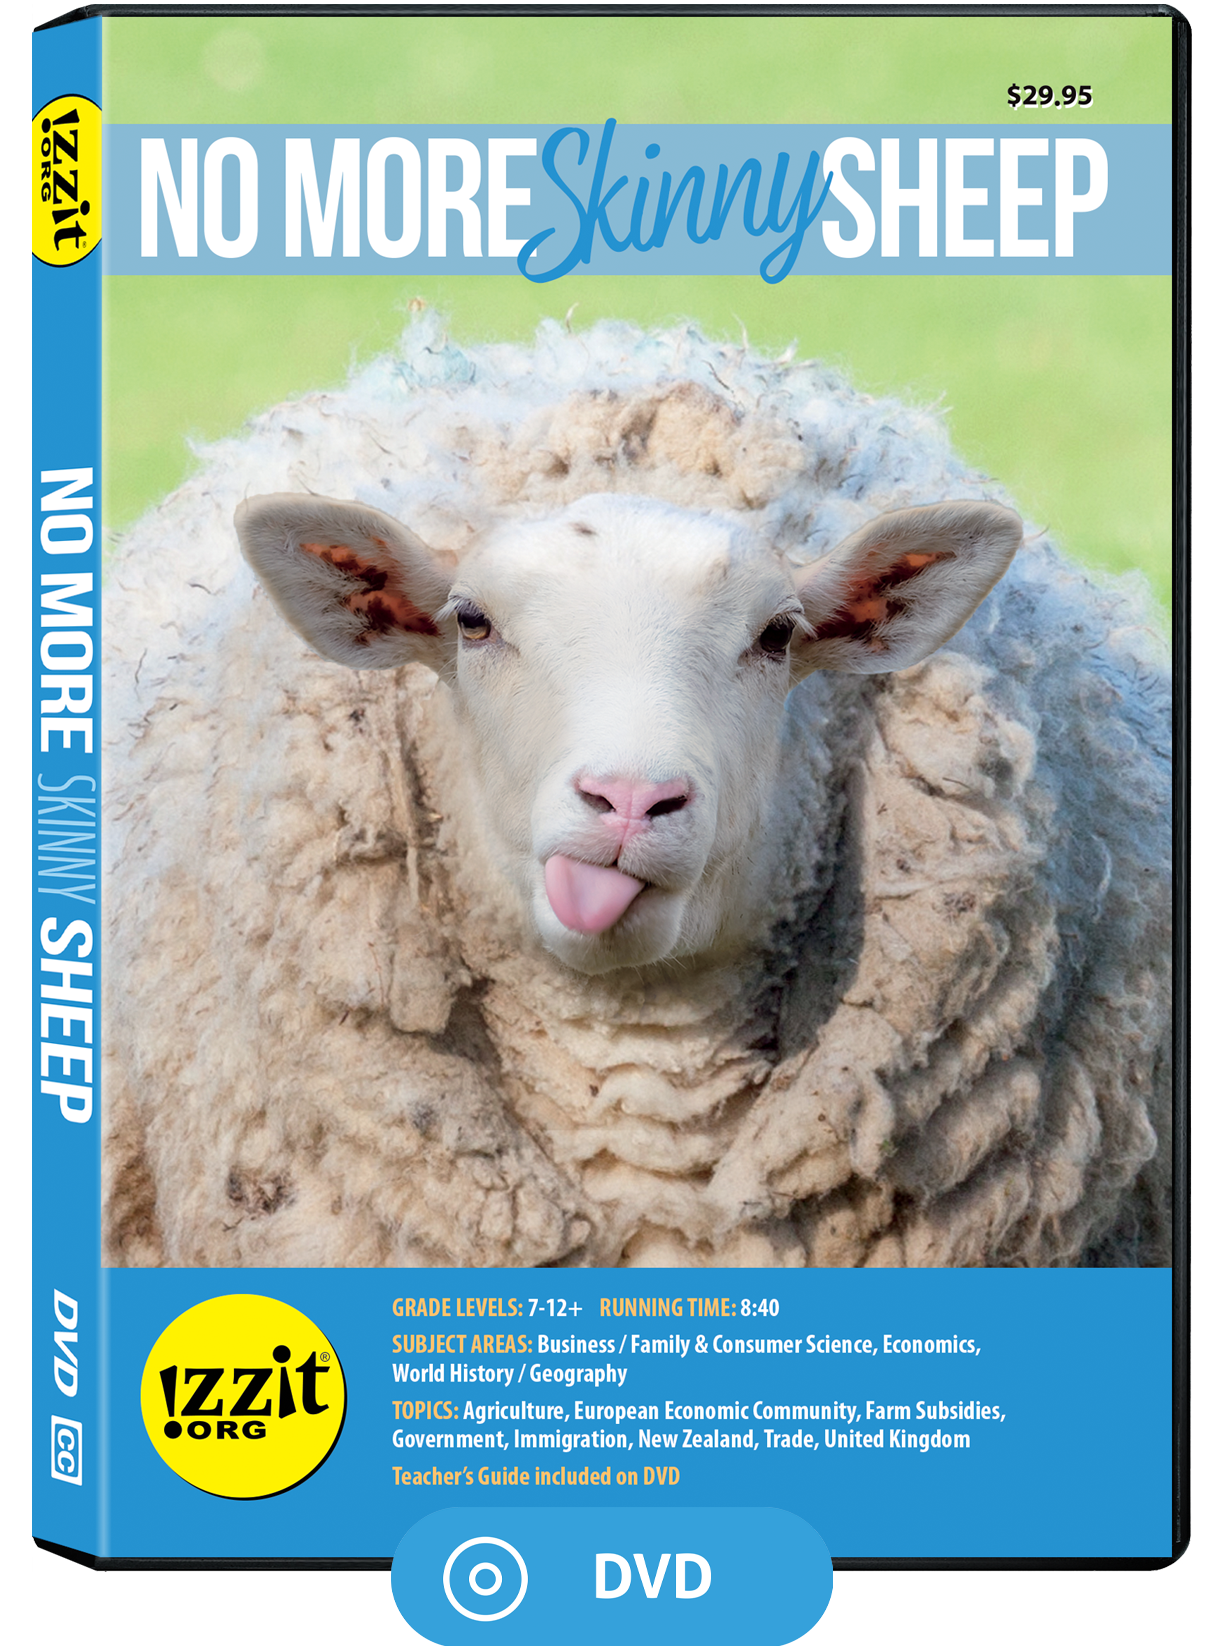 No More Skinny Sheep DVD